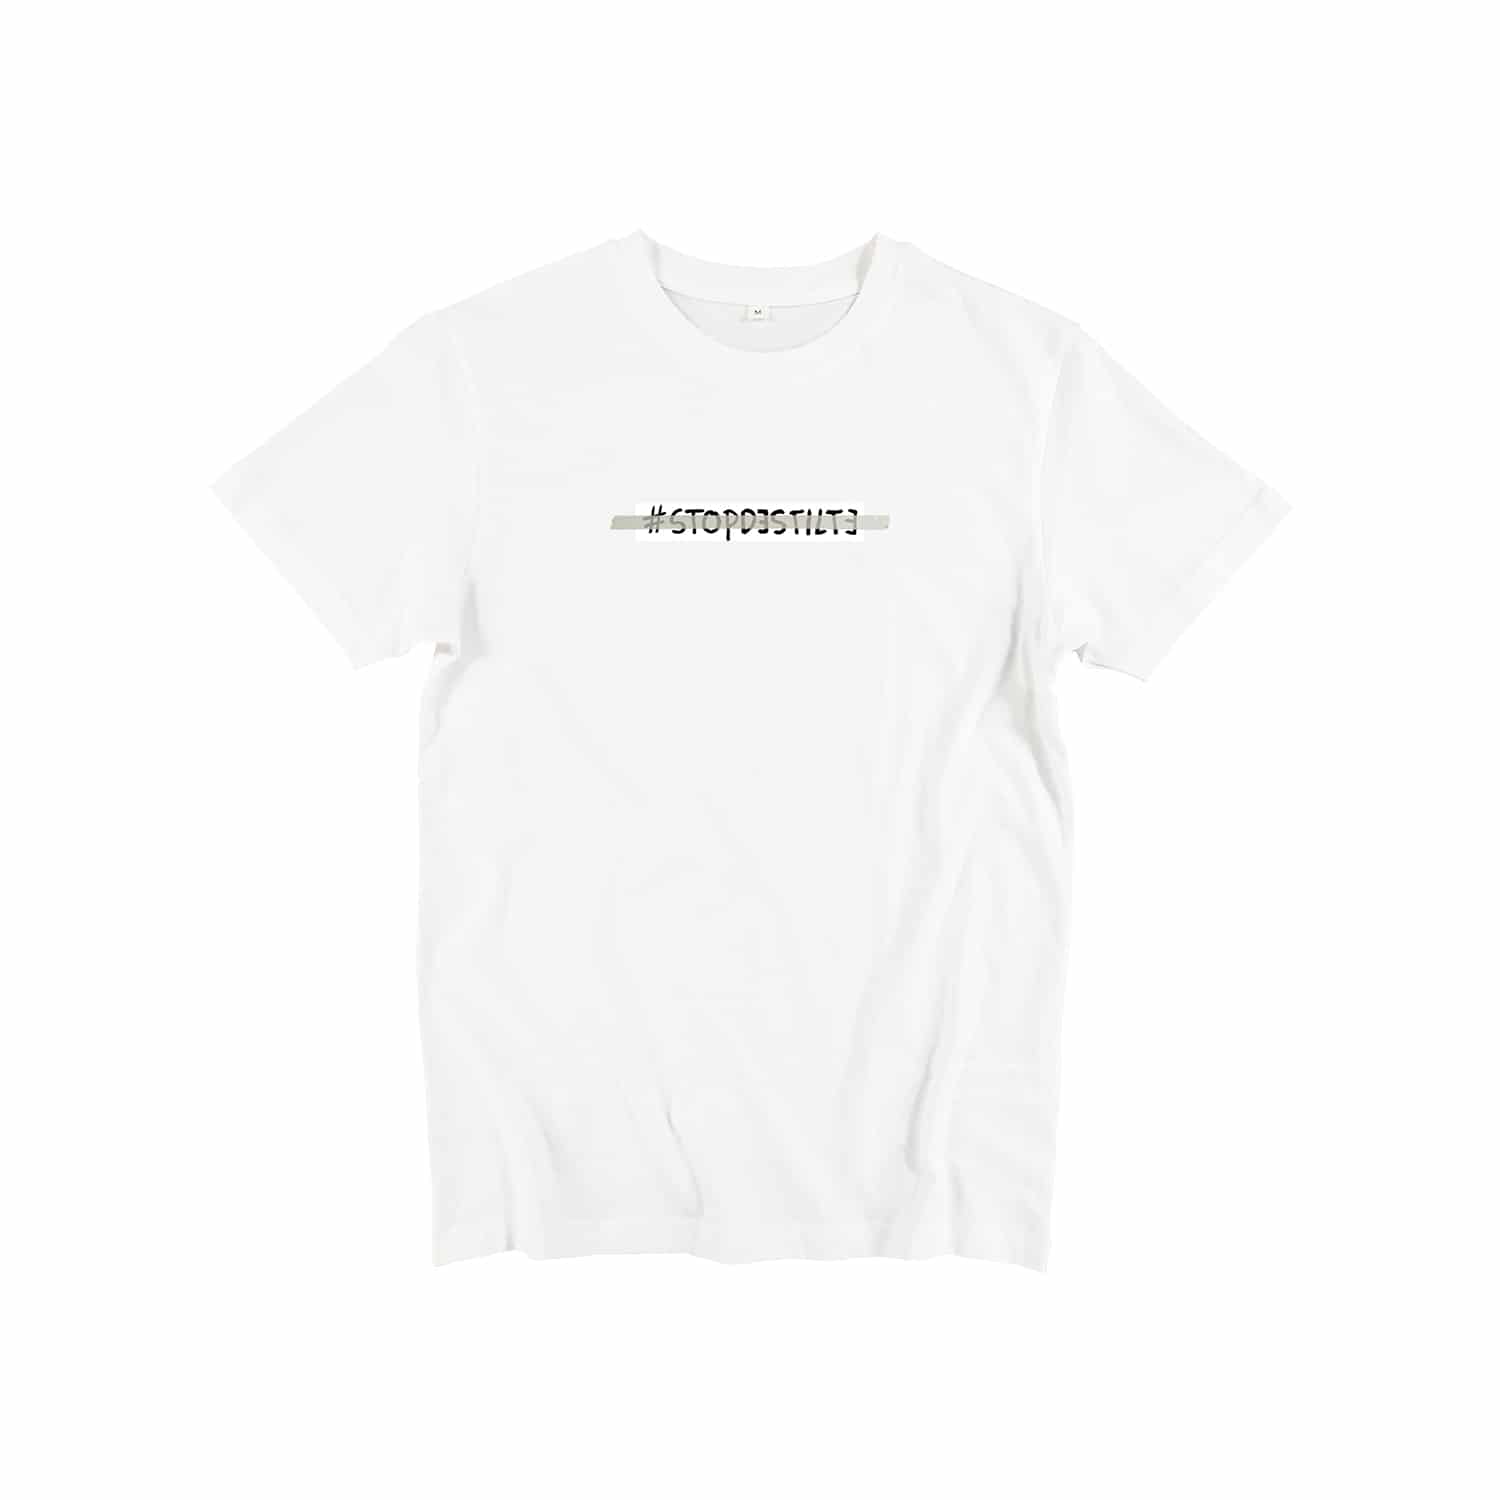 T-shirt - #stopdestilte – wit